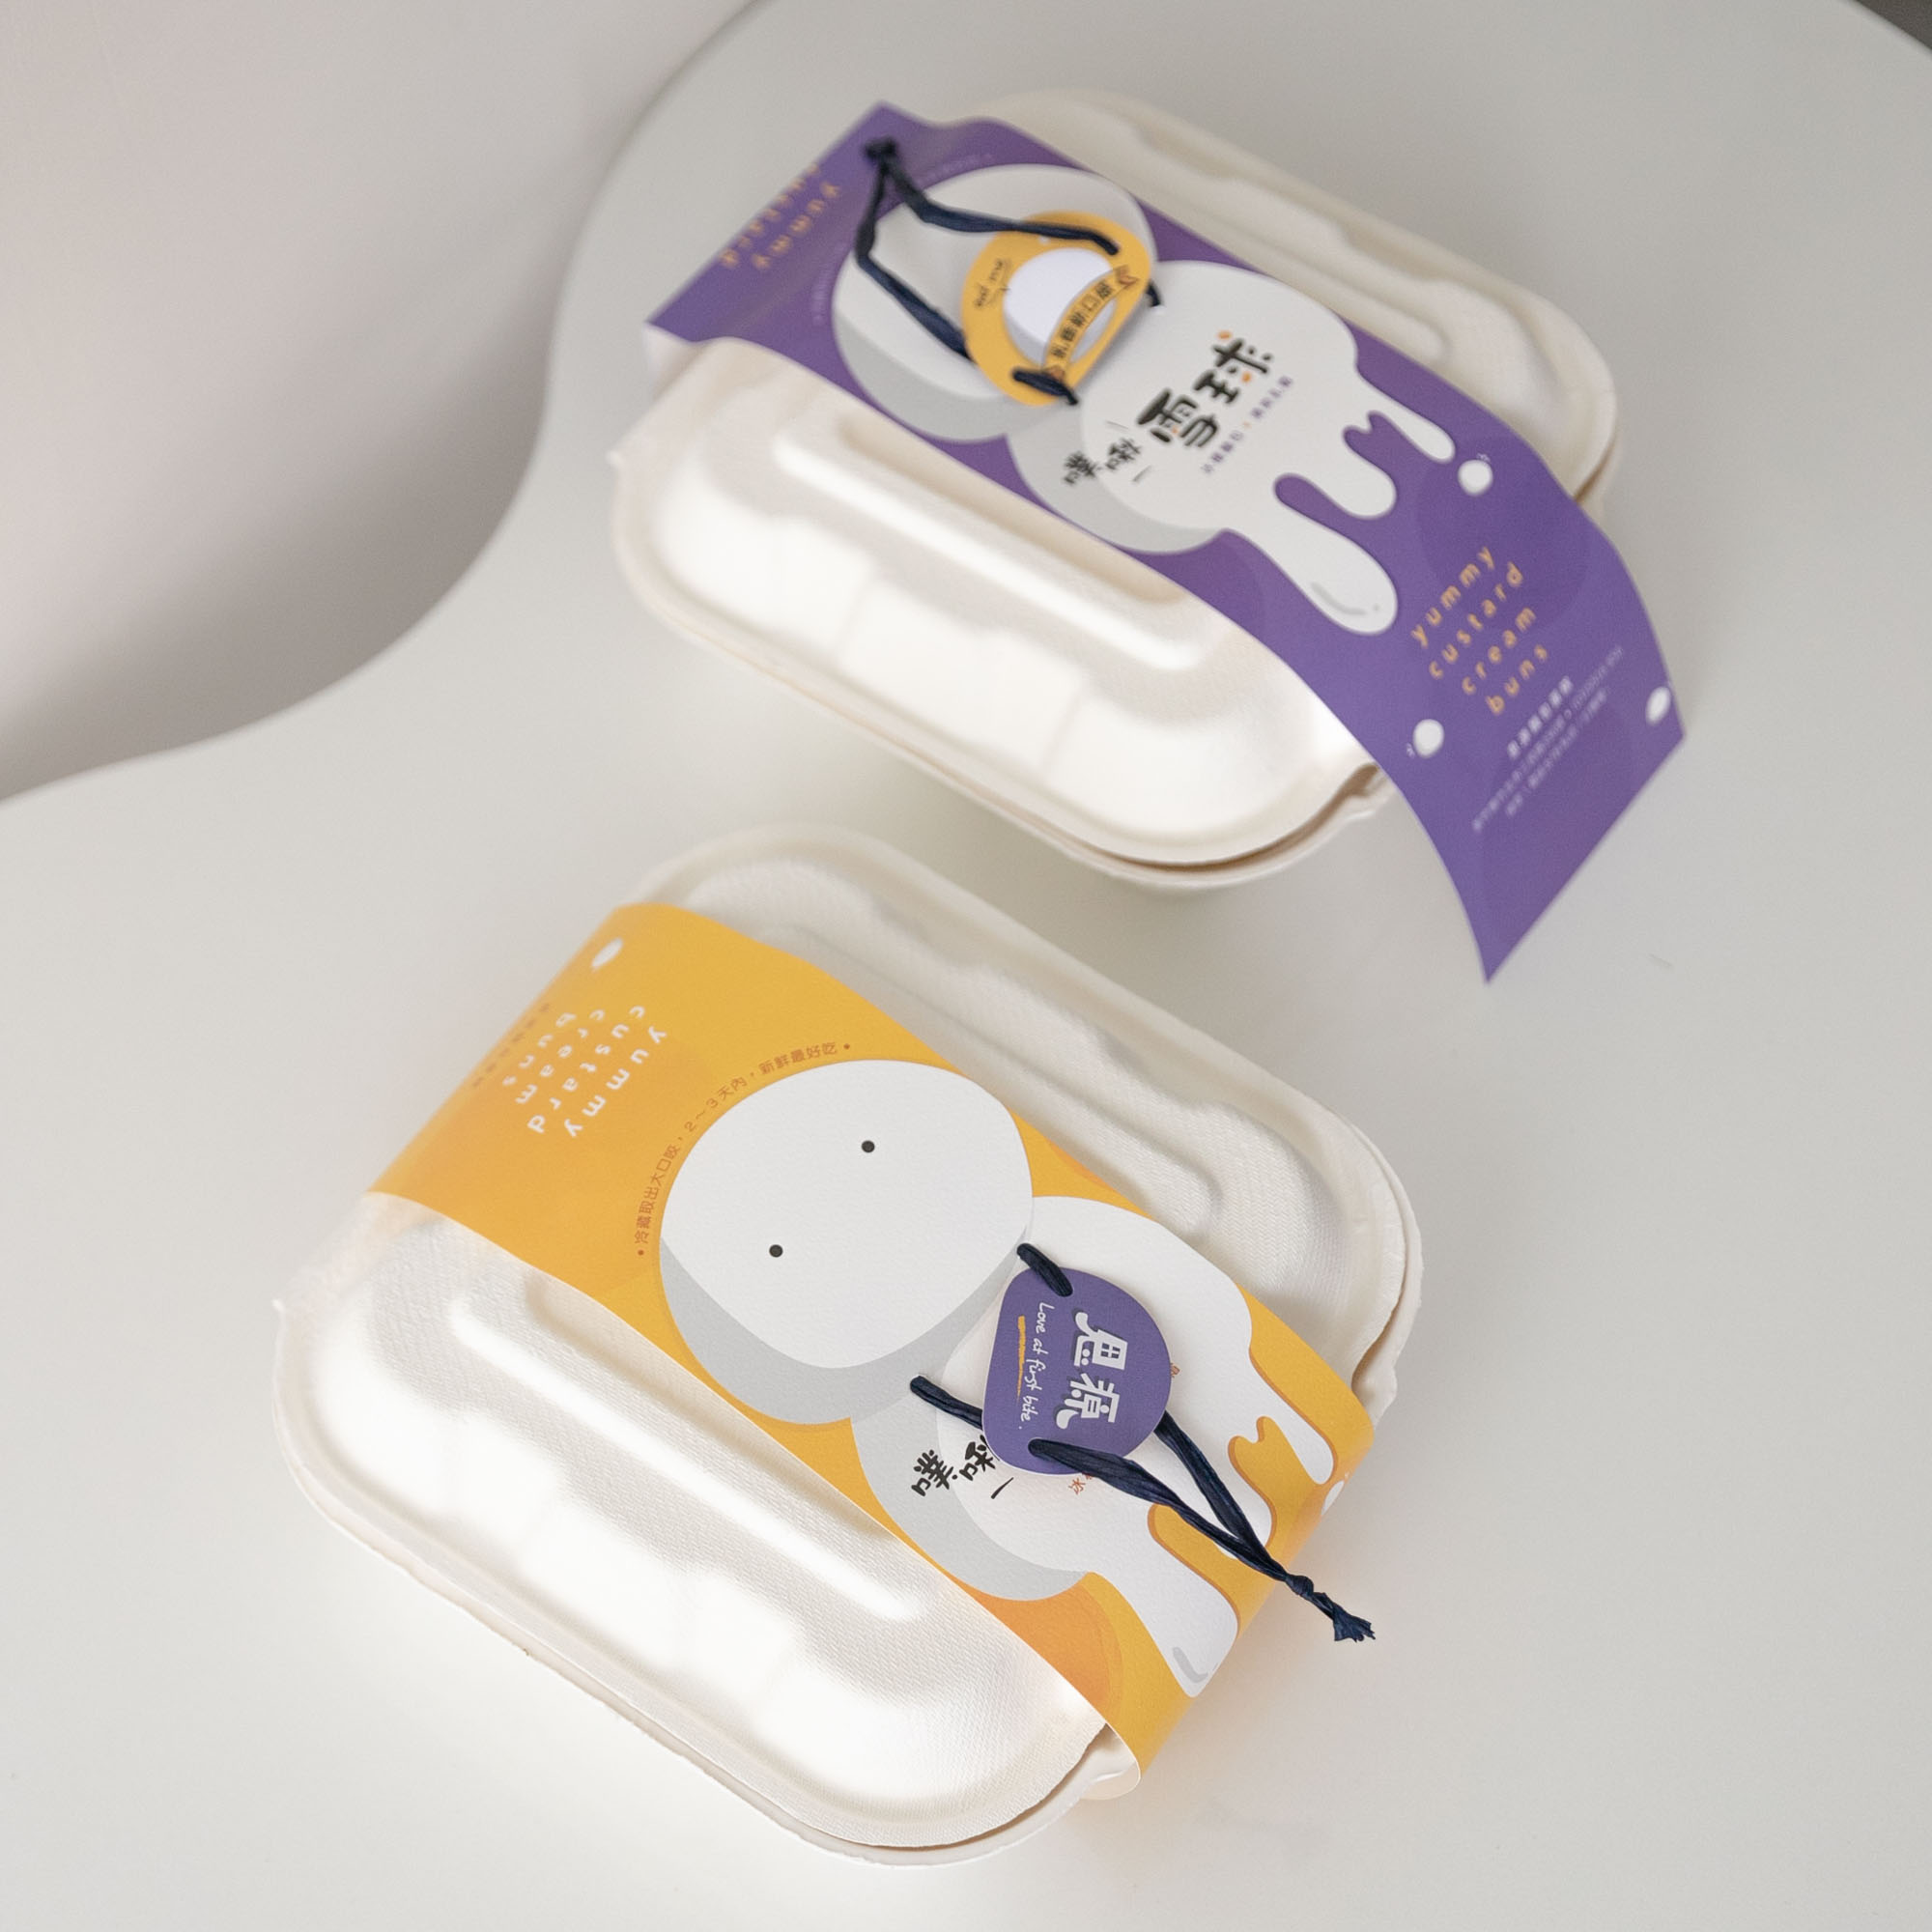 新竹美食-竹北思源麵包店 在地人最愛麵包，推出夏季新品噗啾雪球。